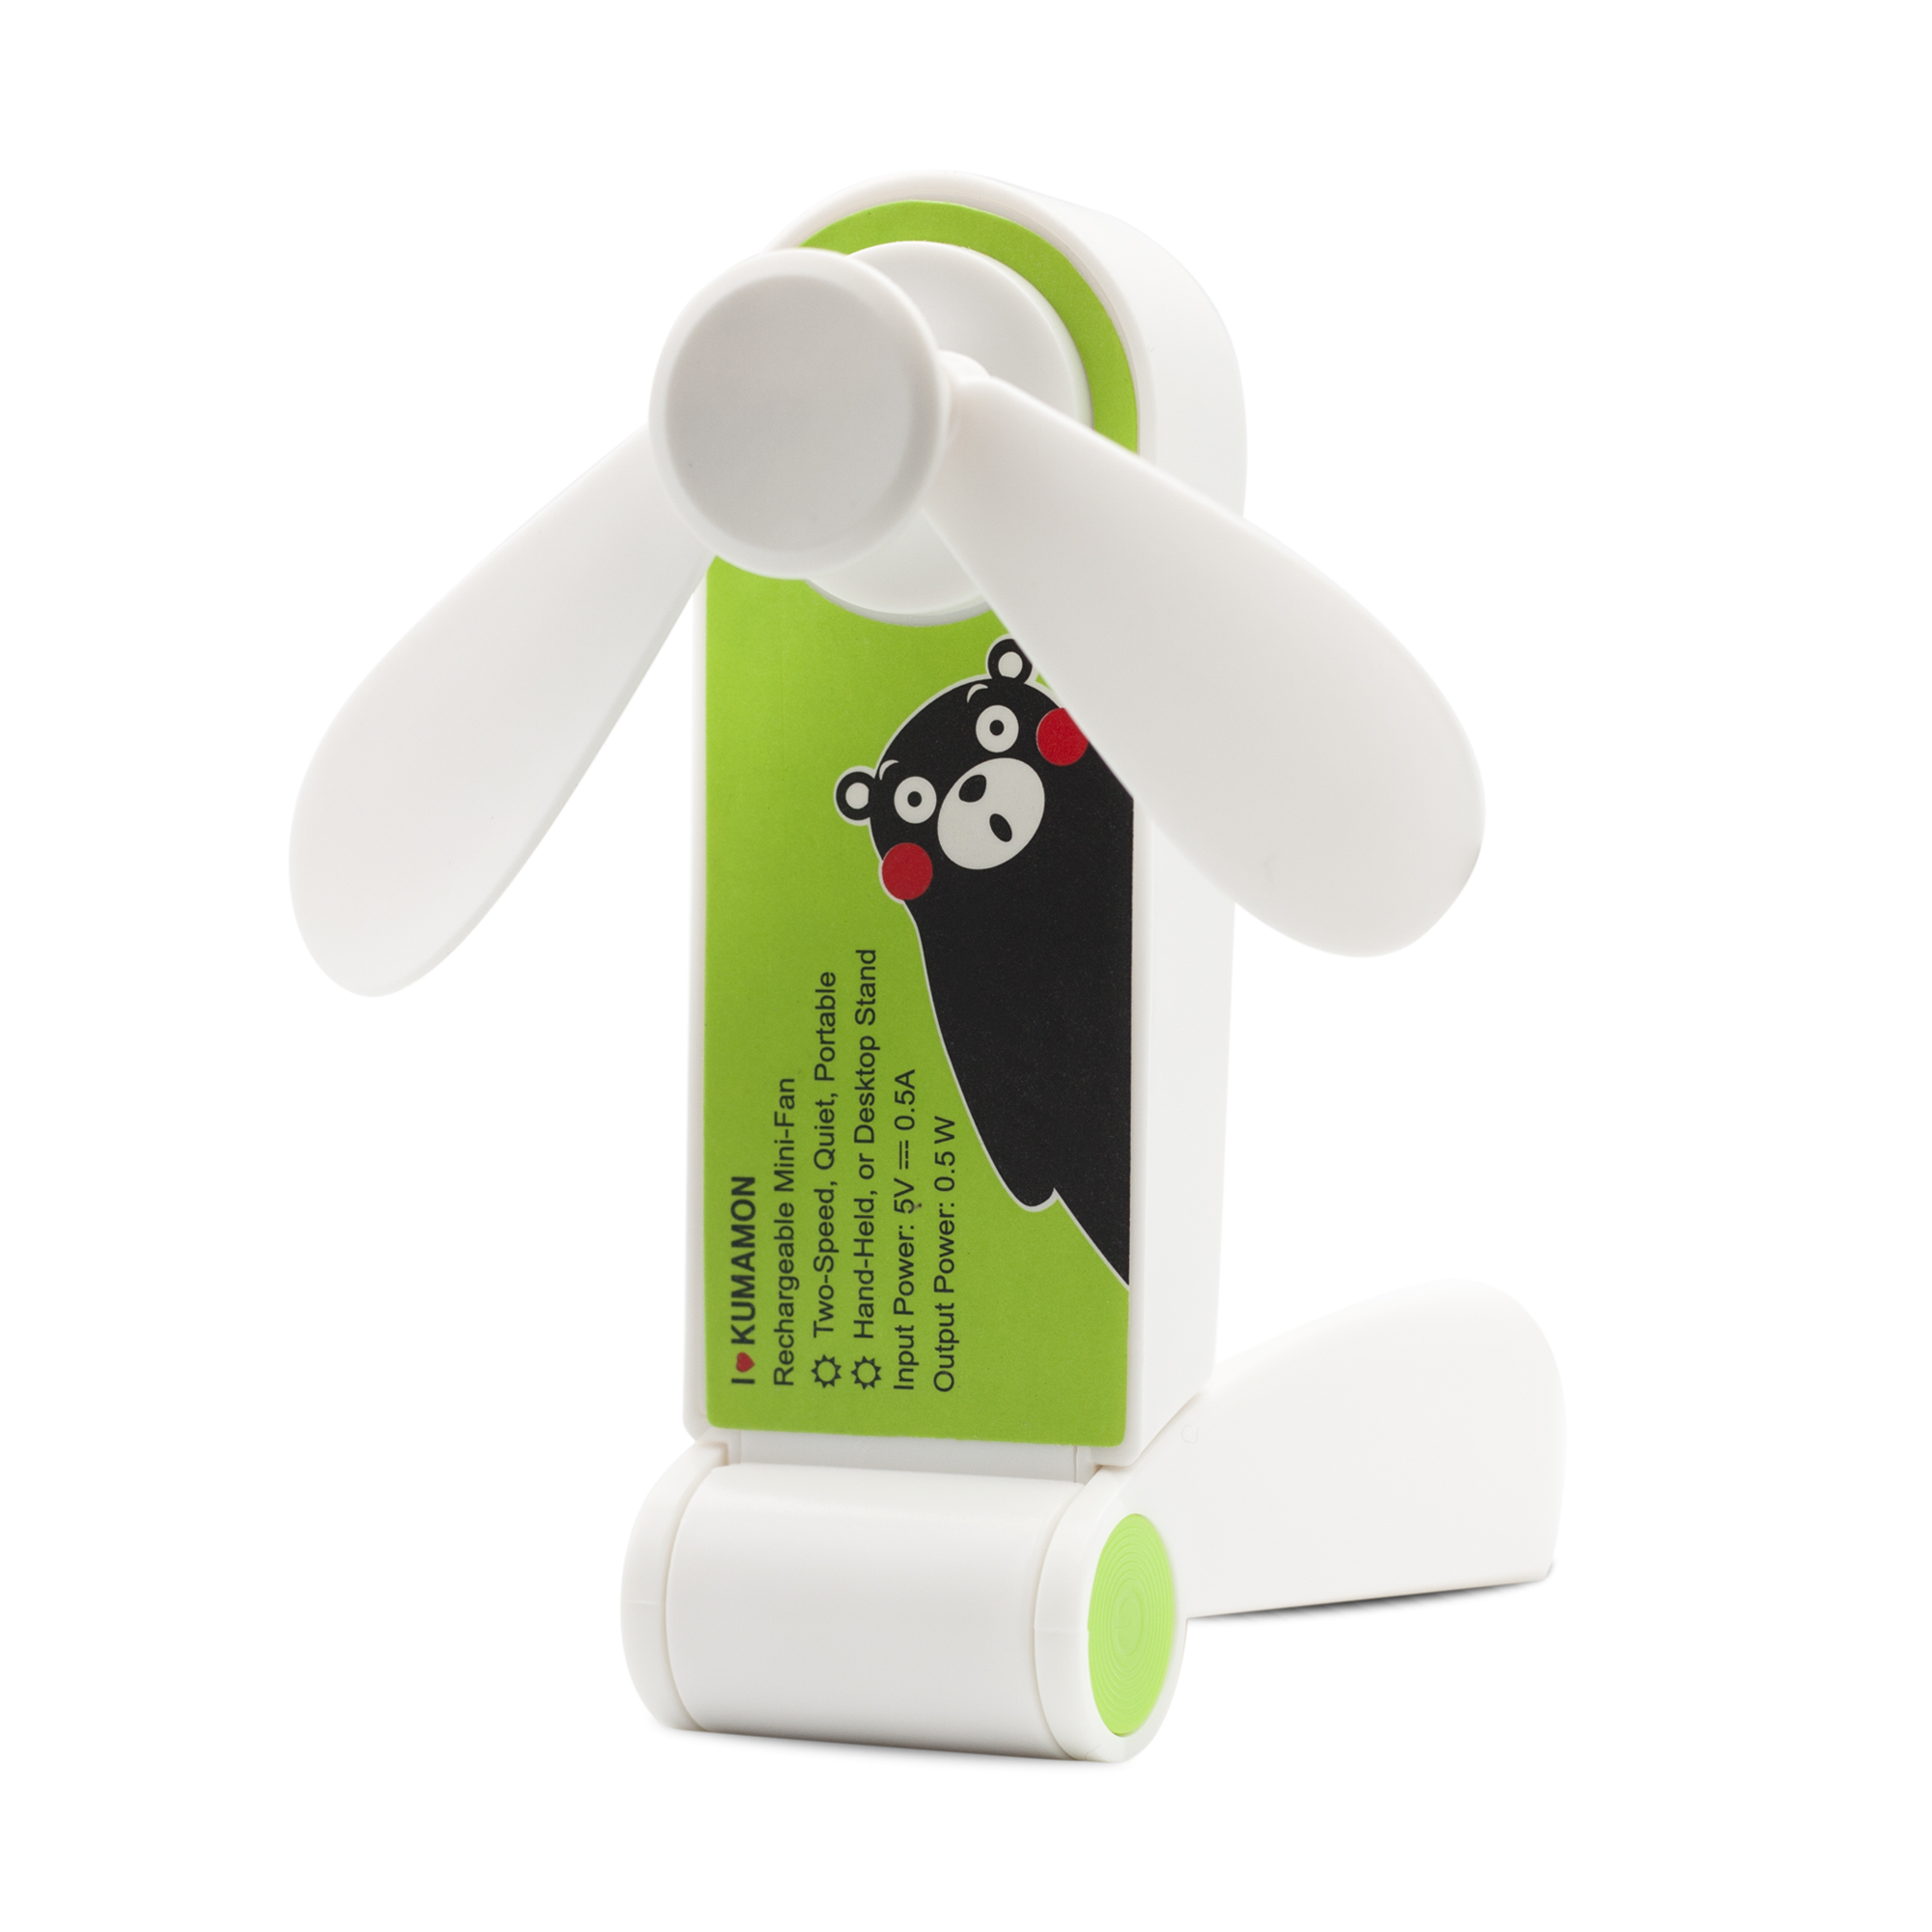 特价日本正版熊本熊小风扇迷你风扇USB风扇静音 kumamon充电扇子 - 图3